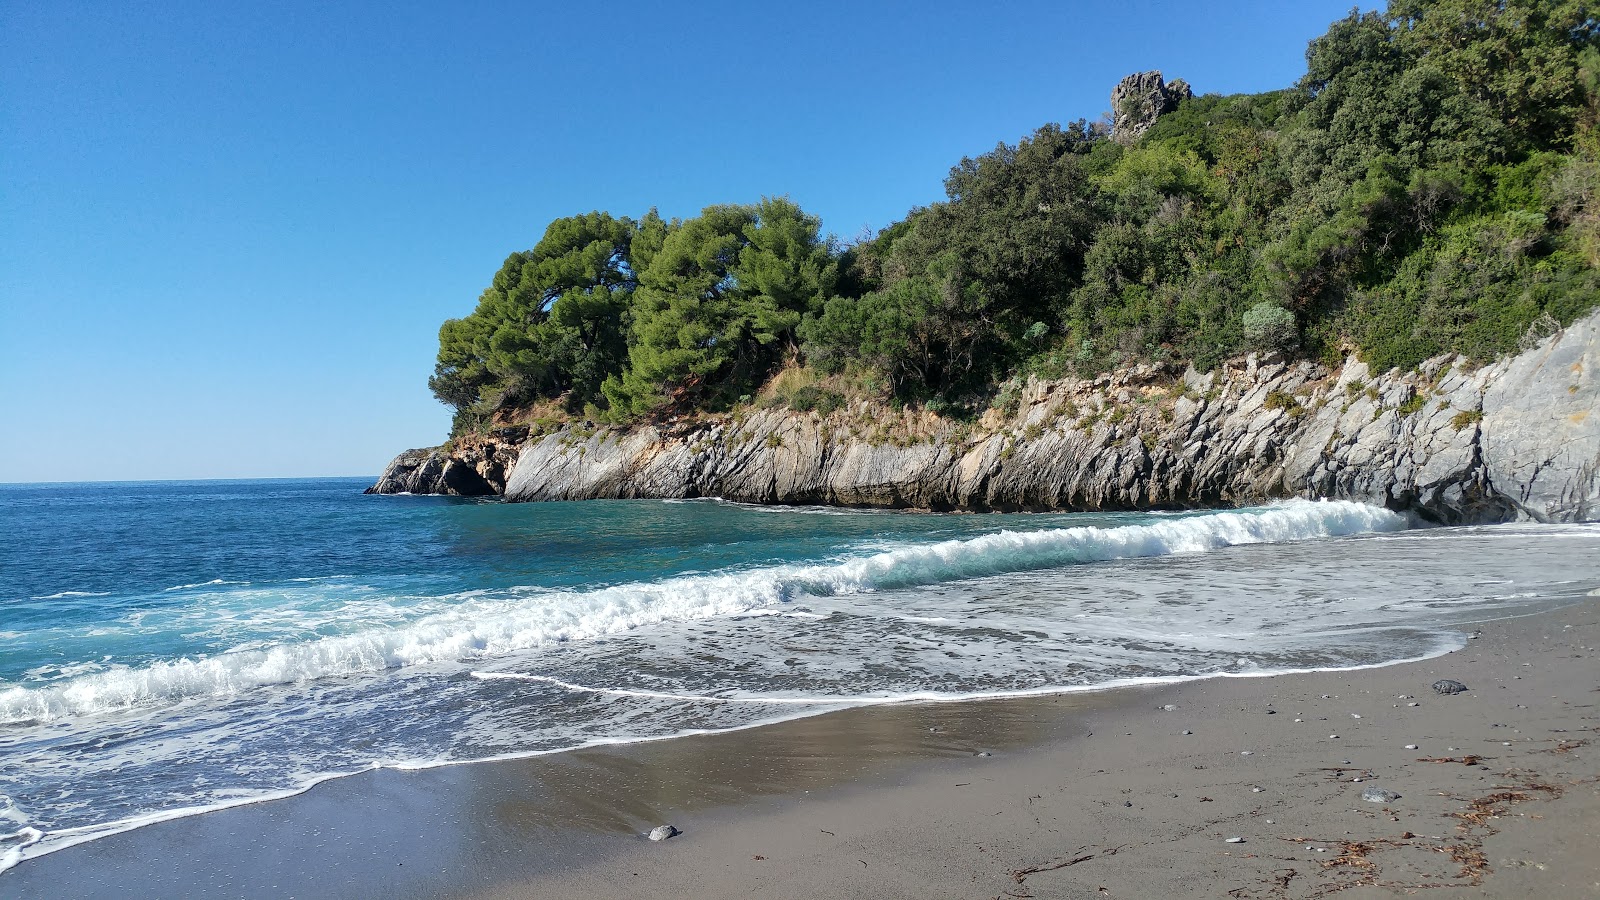 Zdjęcie Spiaggia di Macarro obszar kurortu nadmorskiego